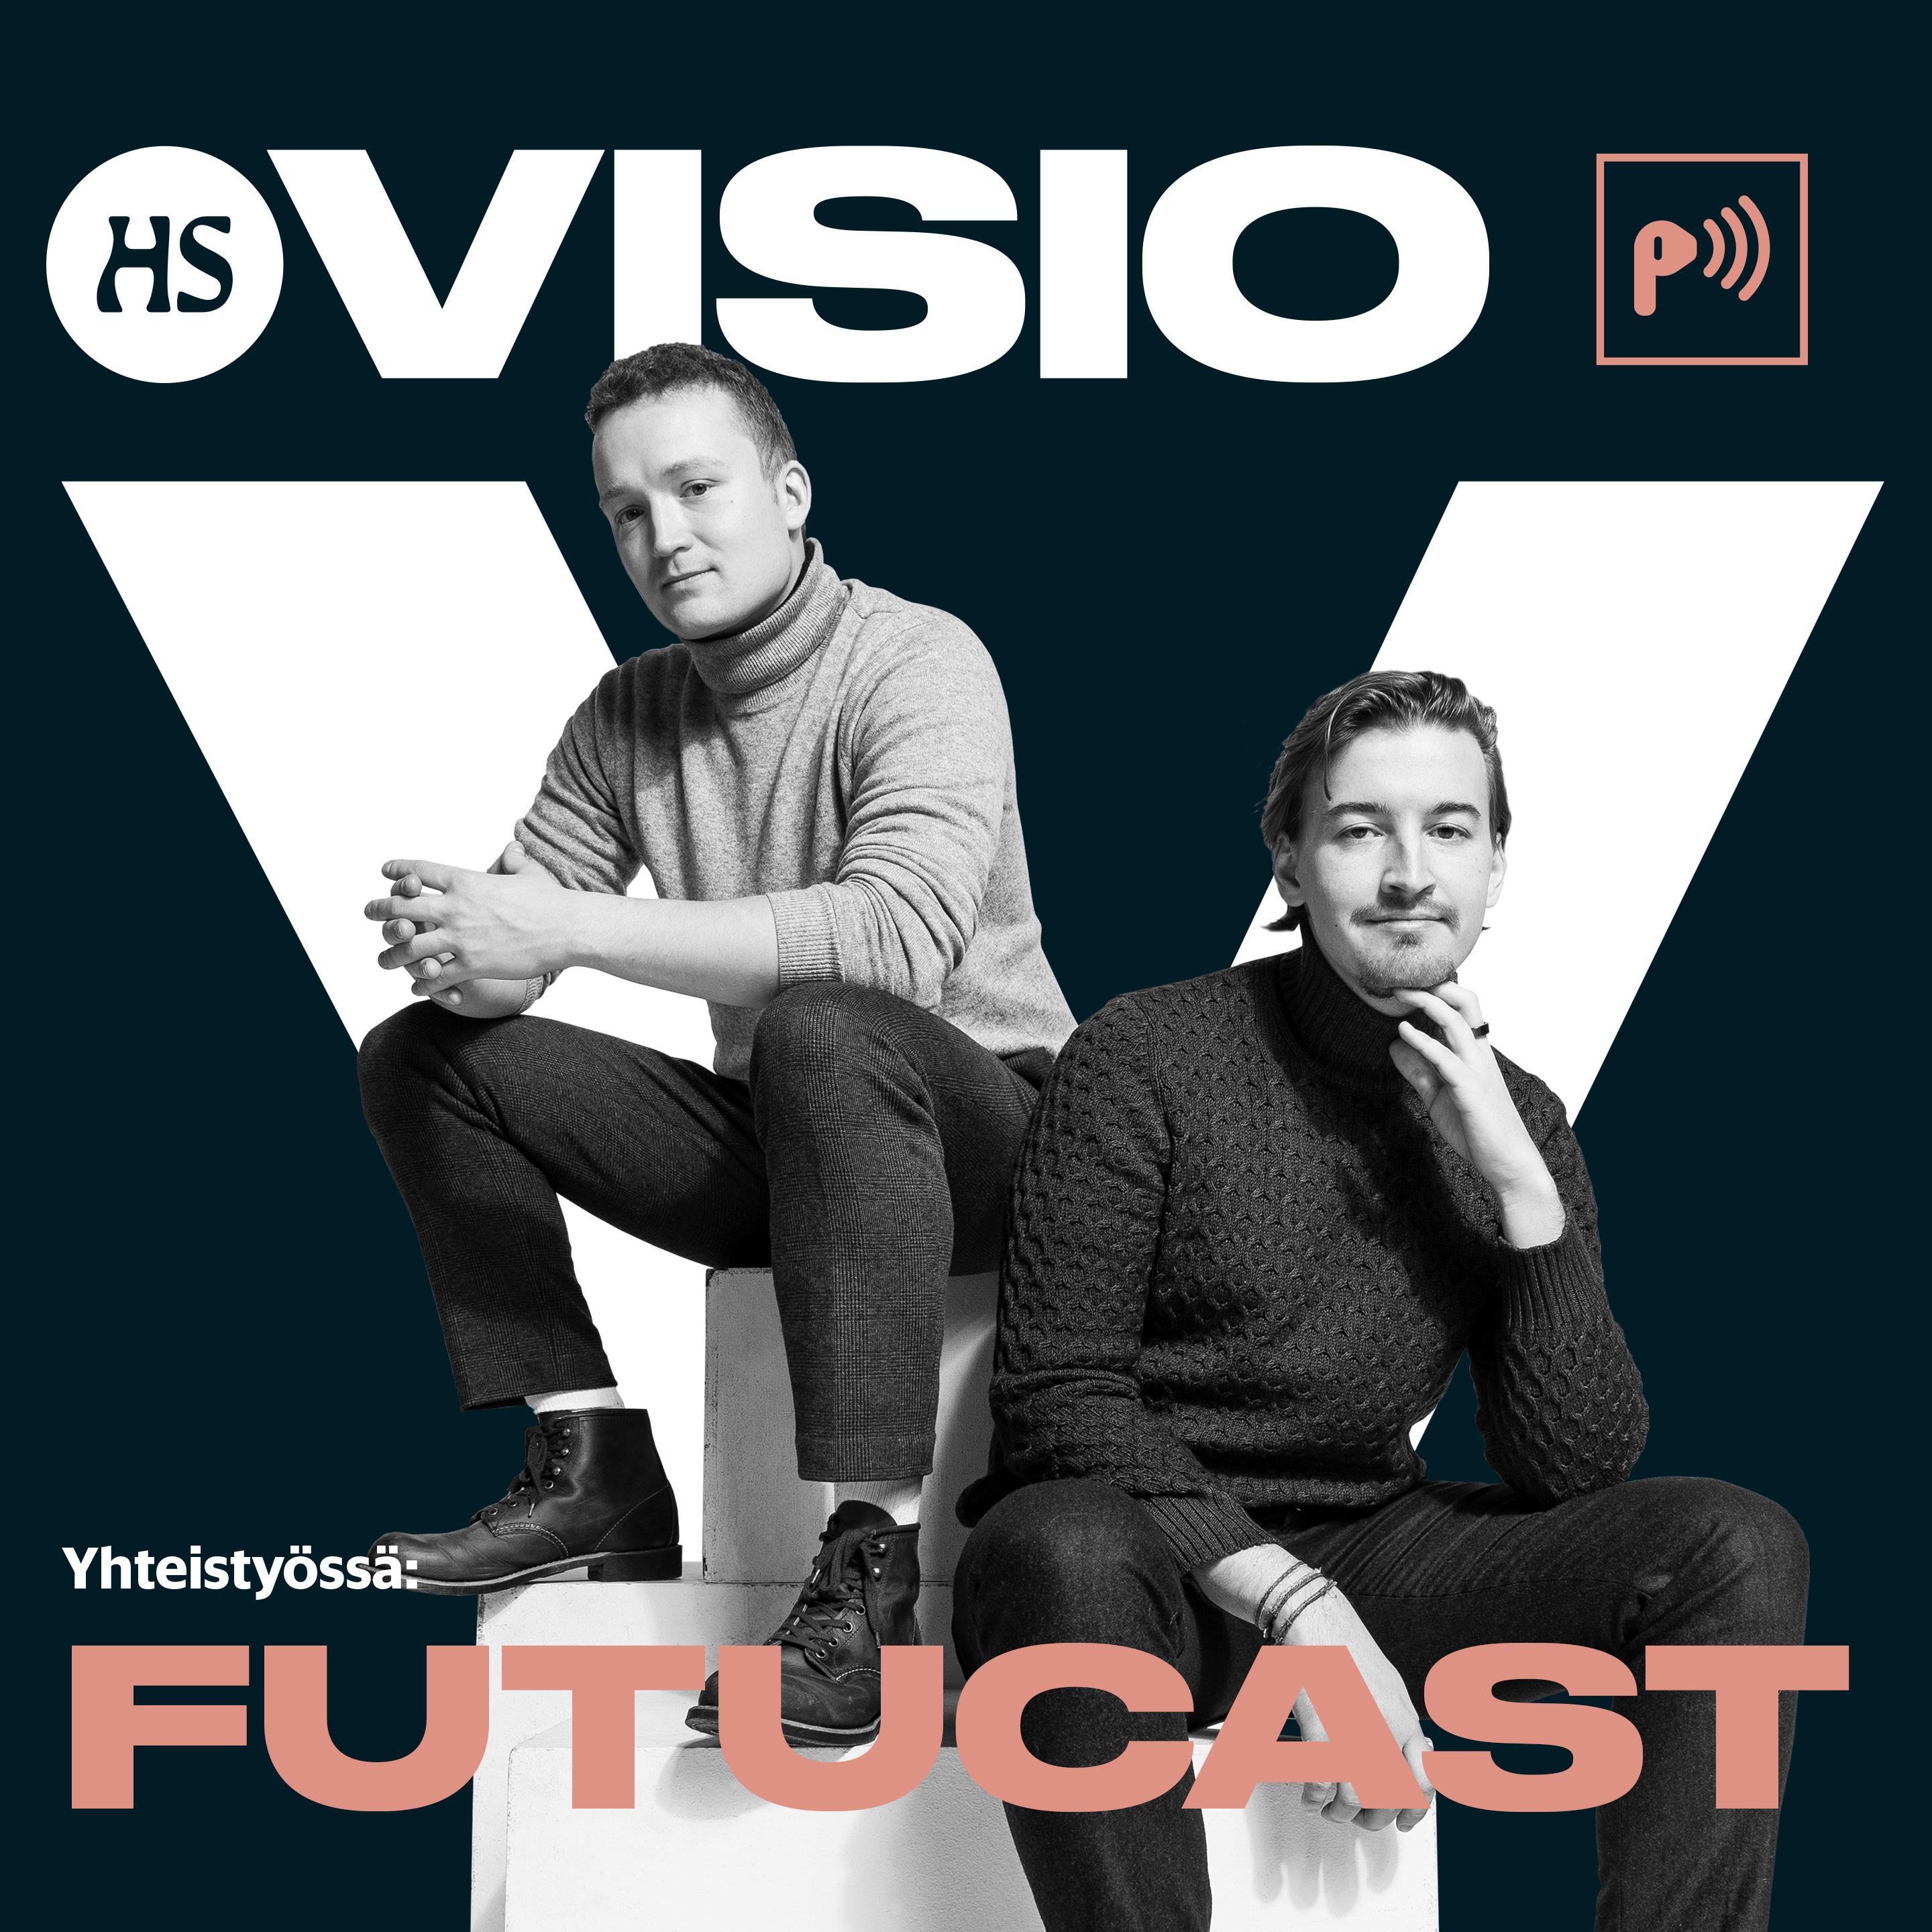 Futucast - HS Visio - podcast